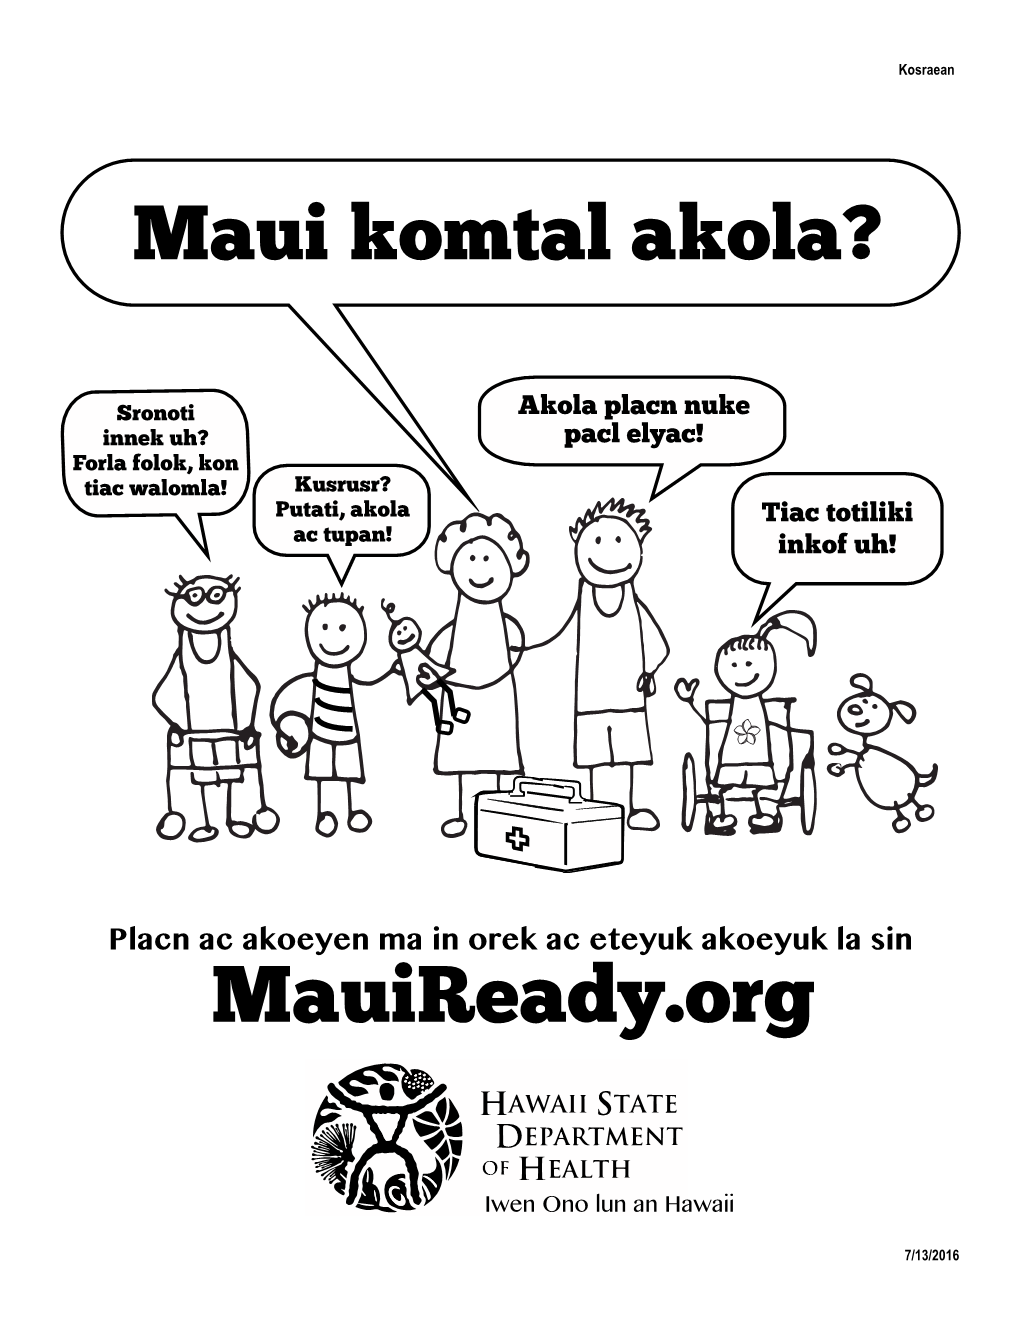 Are You Maui Ready?